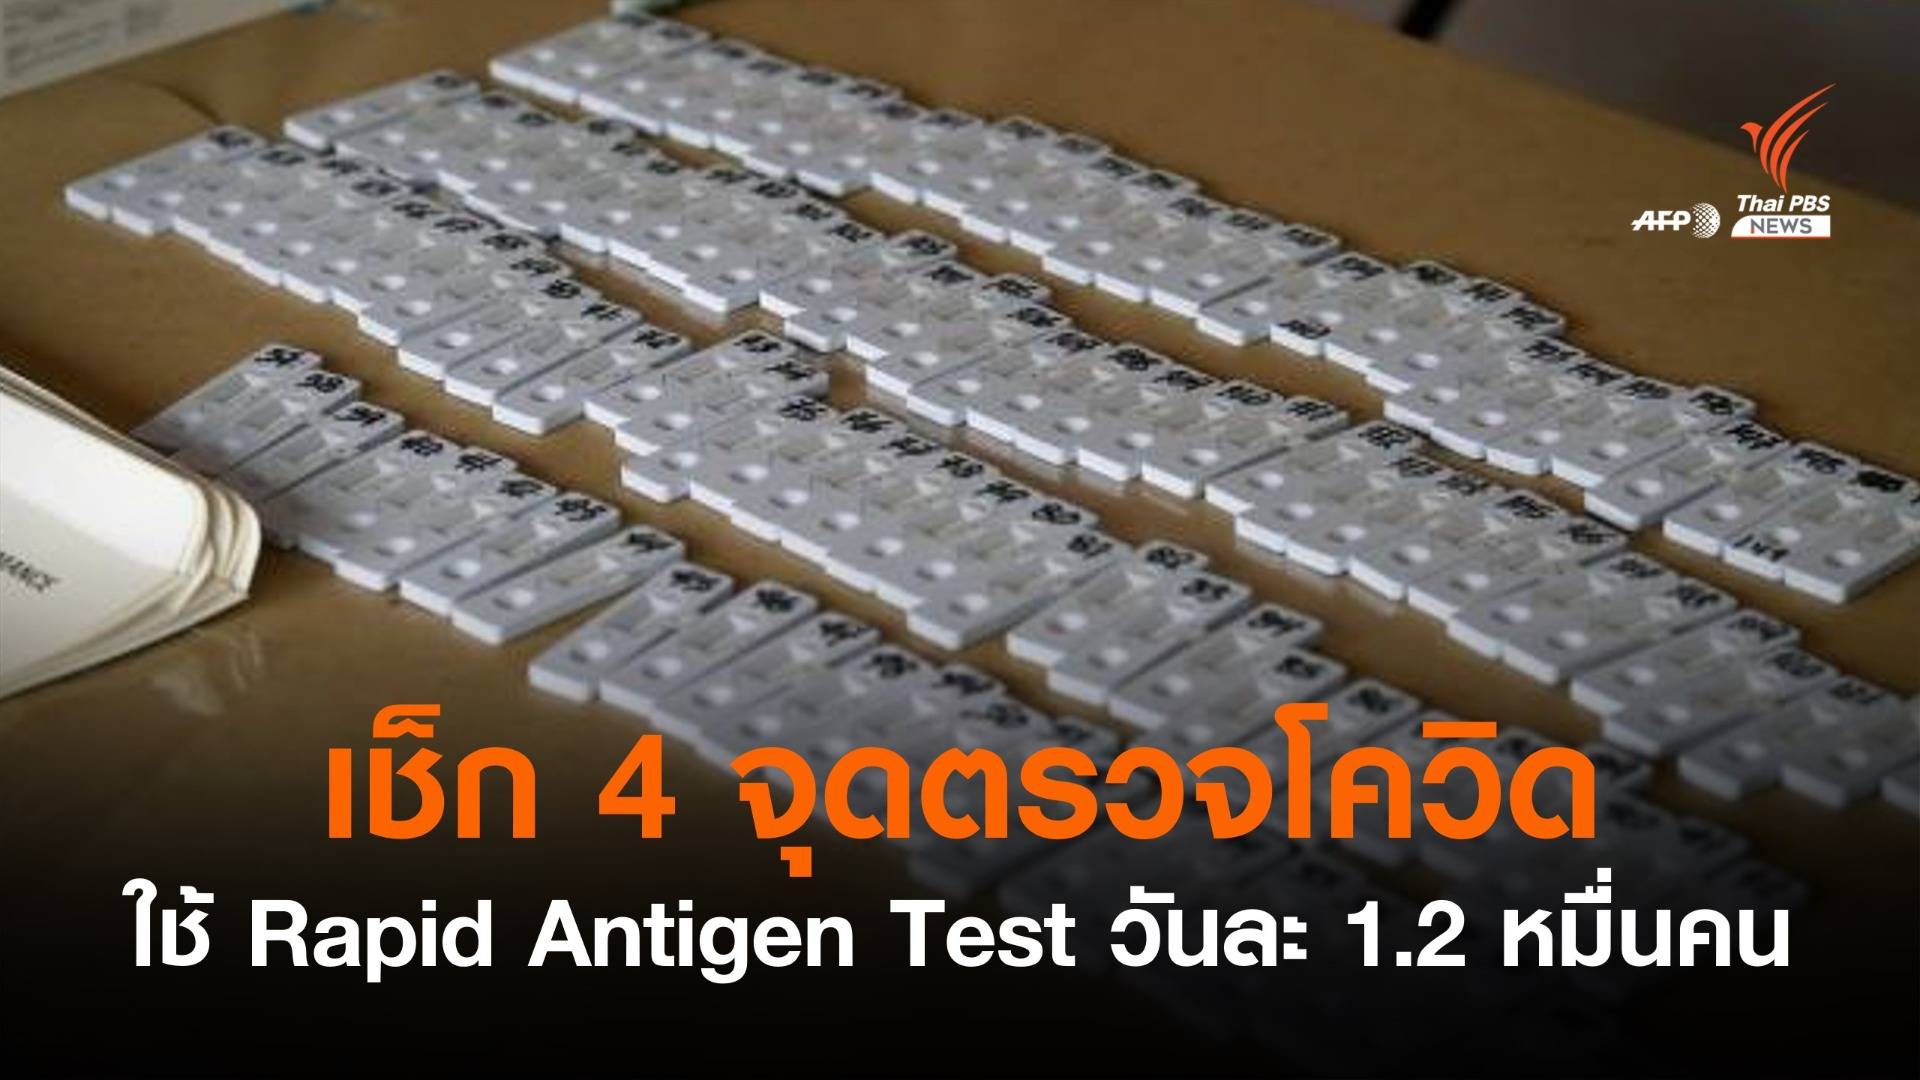 เริ่มวันแรก ใช้ "Rapid Antigen Test" ตรวจโควิดวันละ 1.2 หมื่นคน